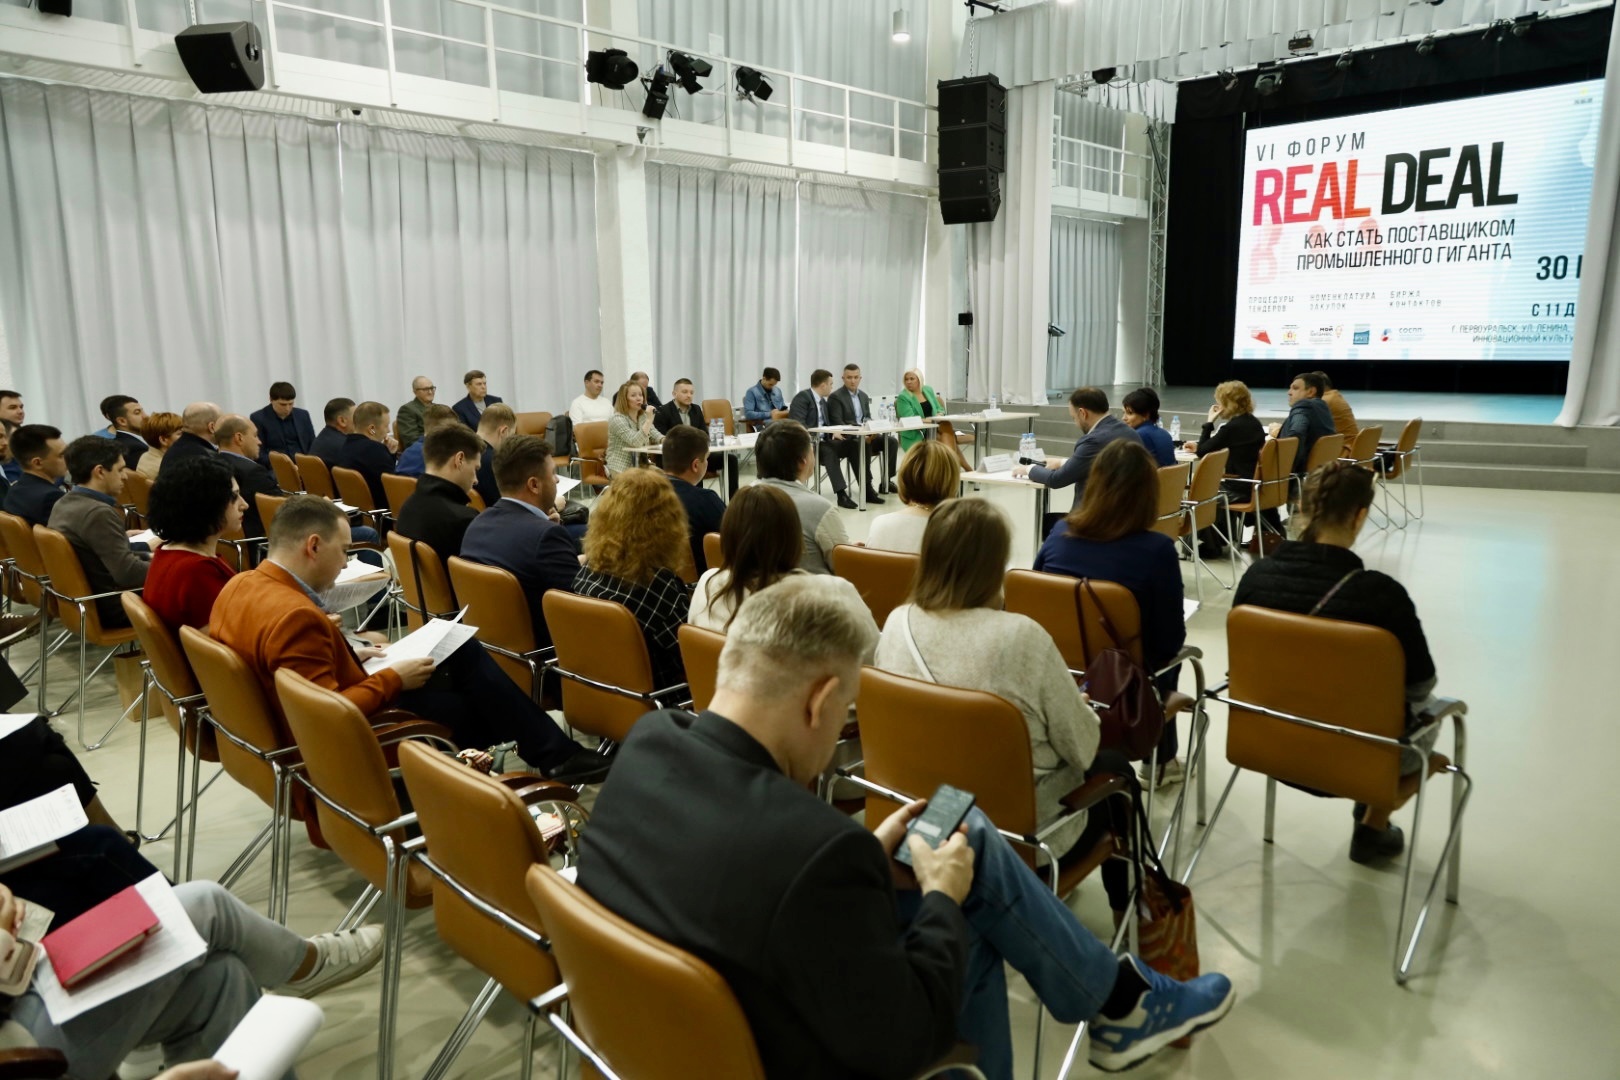 В городе состоялся VI Форум «Real Deal: как стать поставщиком промышленного гиганта»